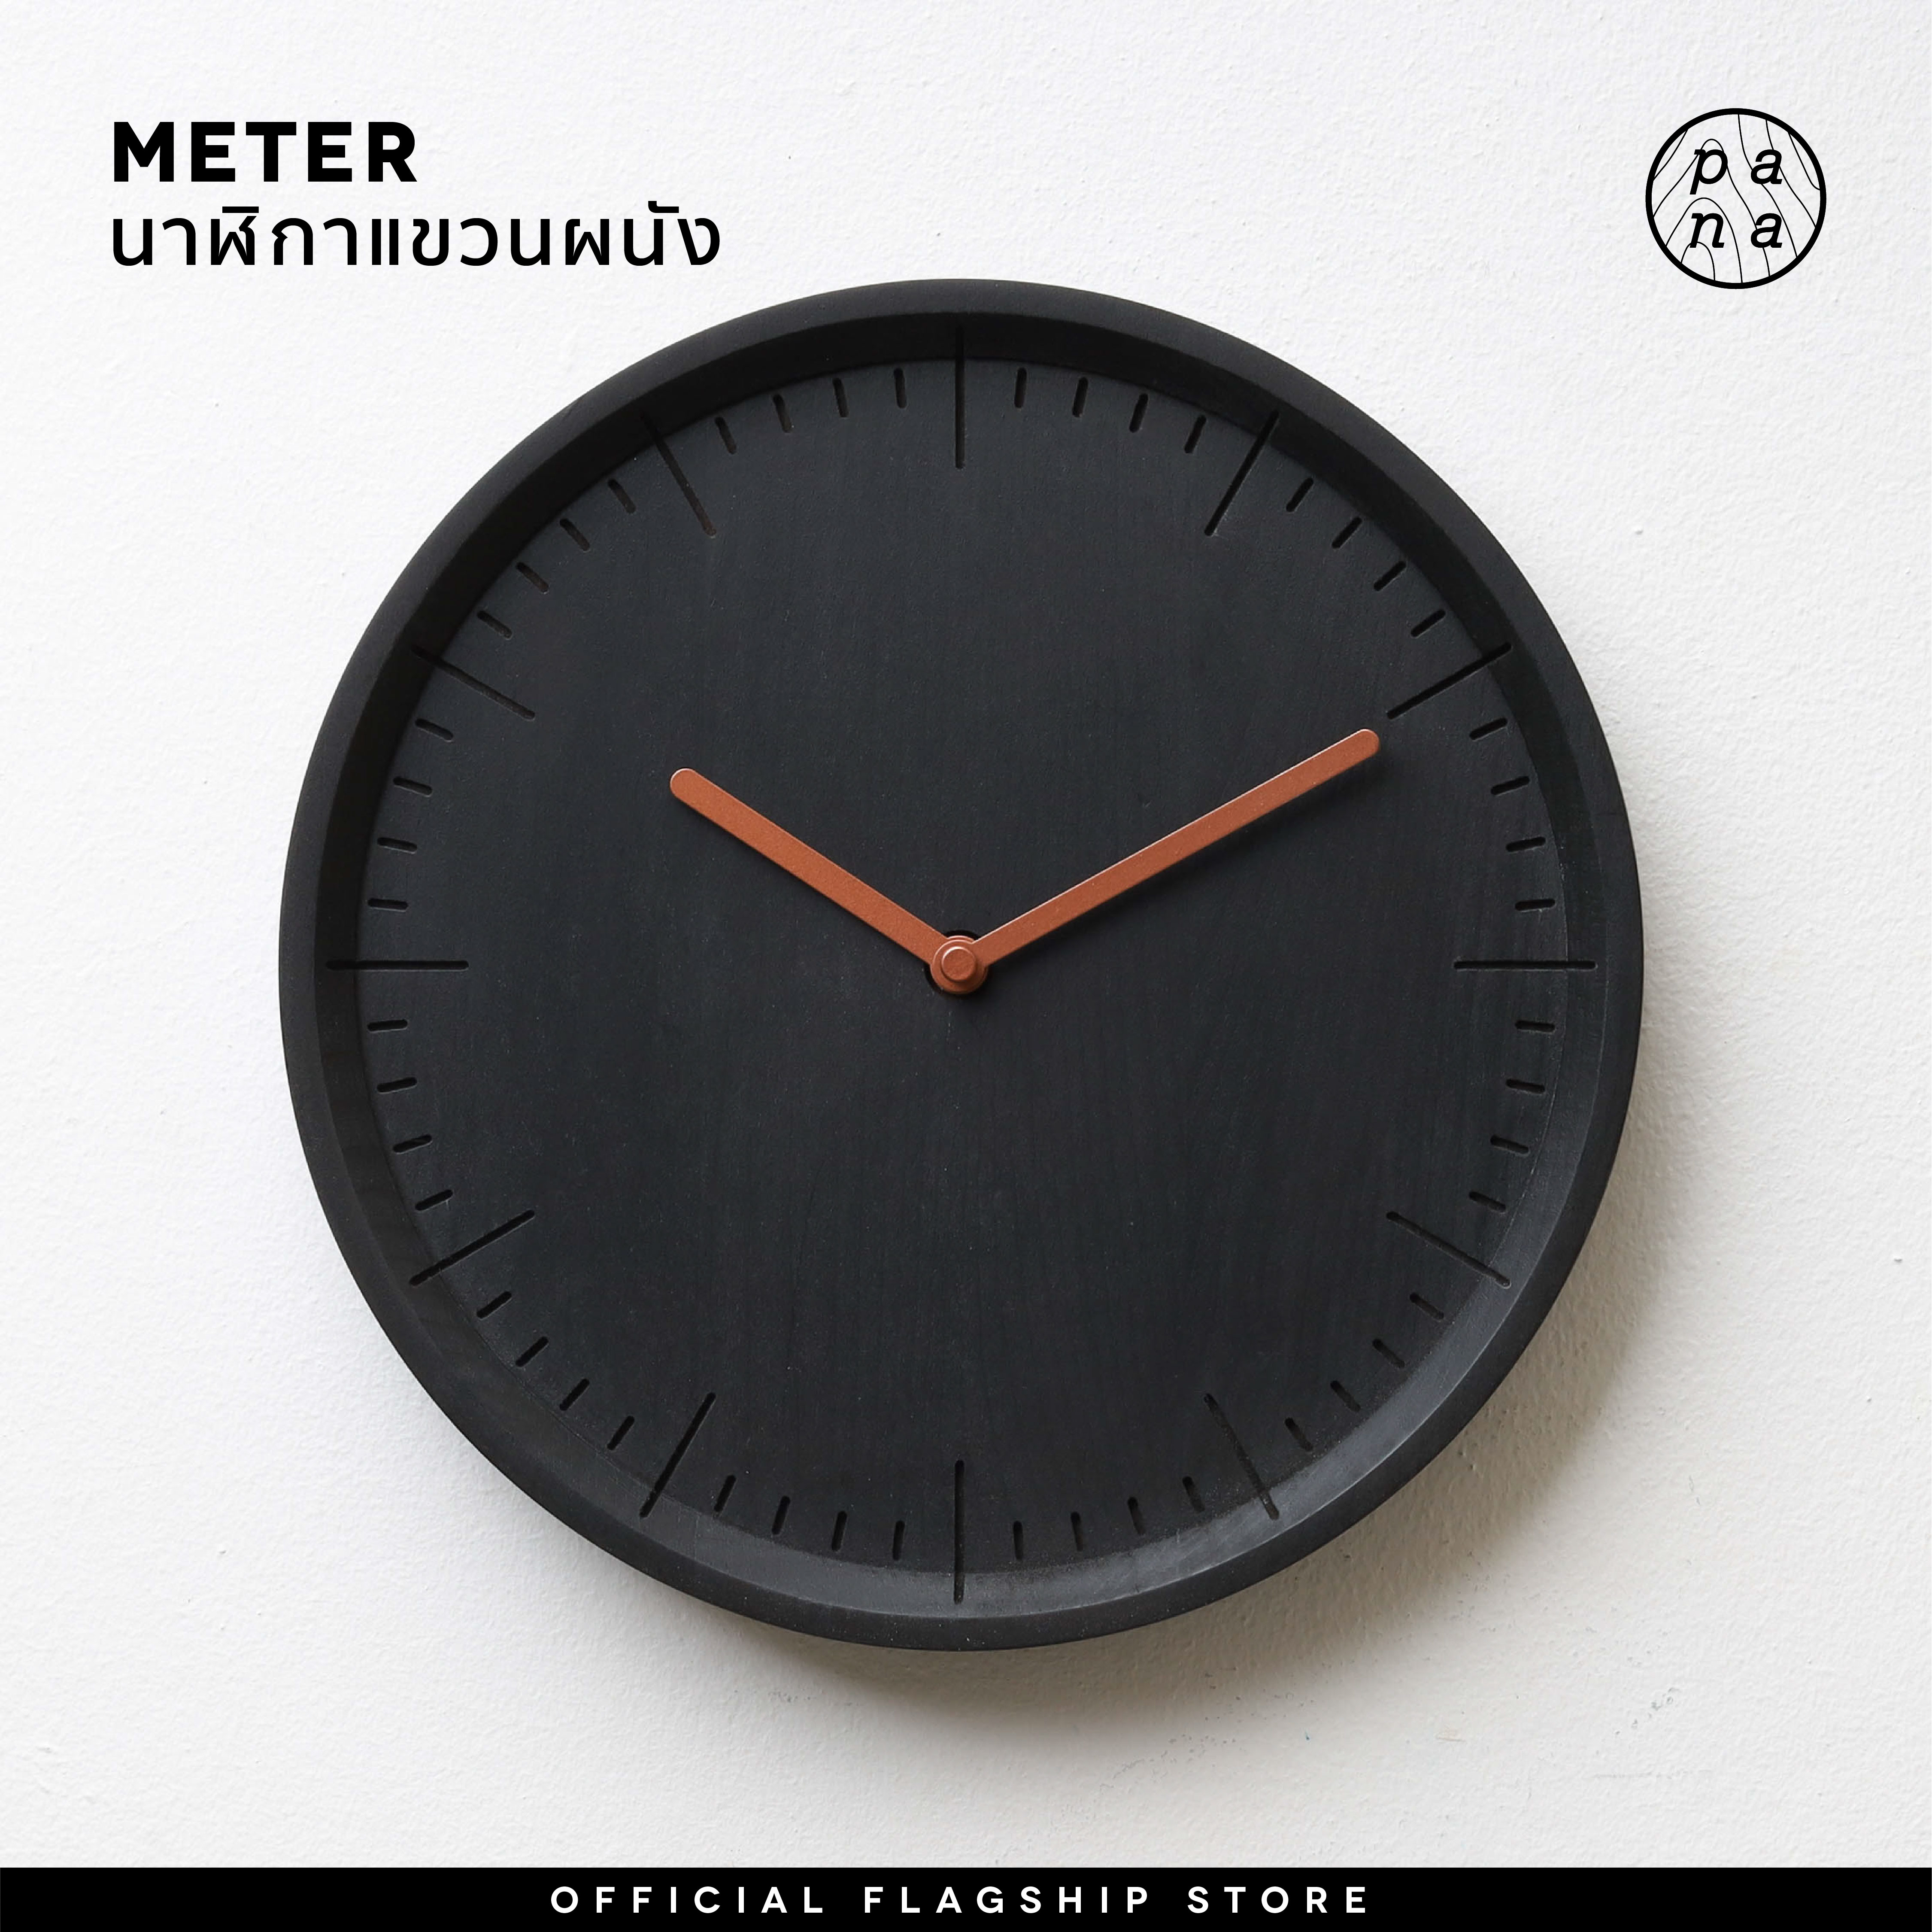 Pana Objects Meter : wall clock (charcoal collection) นาฬิกาแขวนผนังทรงกลม รูปทรงและรายละเอียดเรียบง่าย